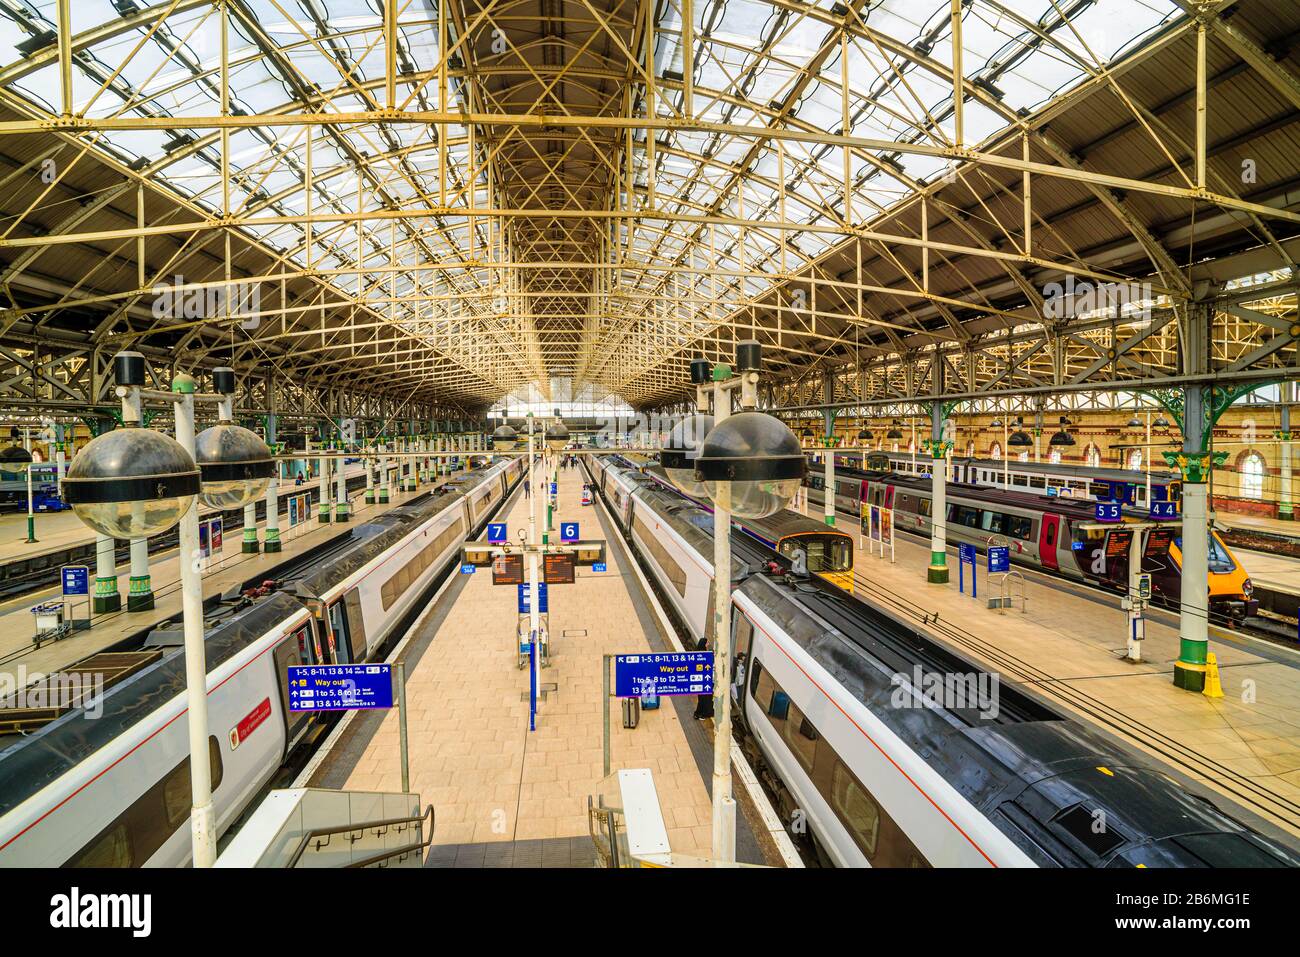 Bahnschuppen und Bahnsteige, Manchester Piccadilly Stockfoto